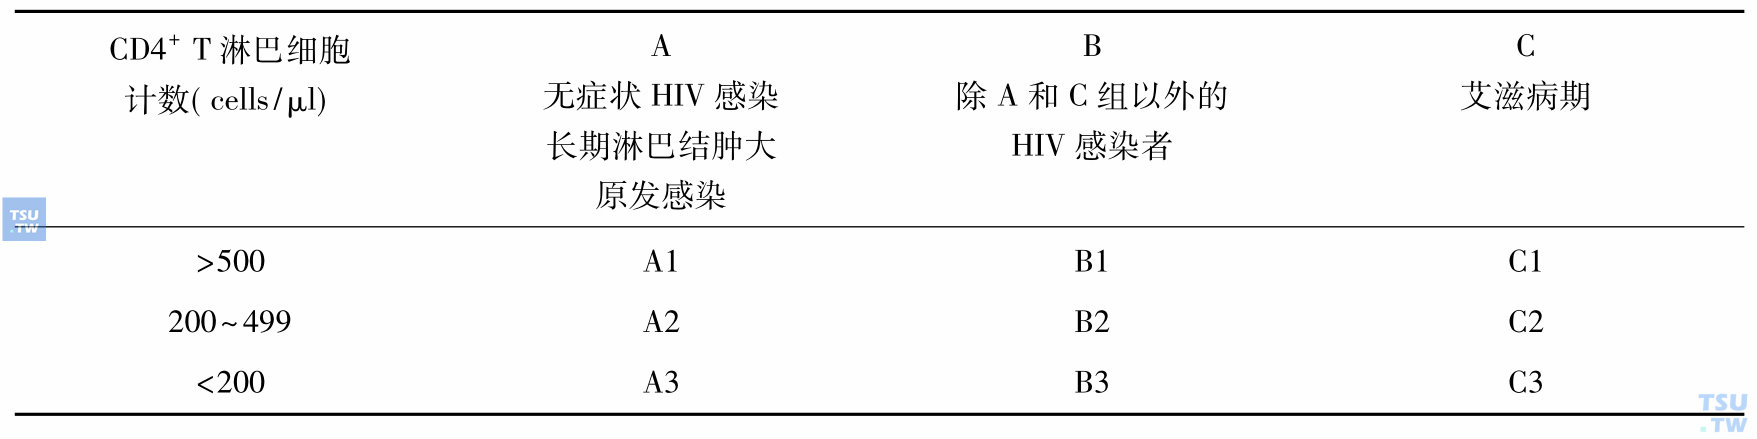 美国CDC1993年HIV/AIDS分期